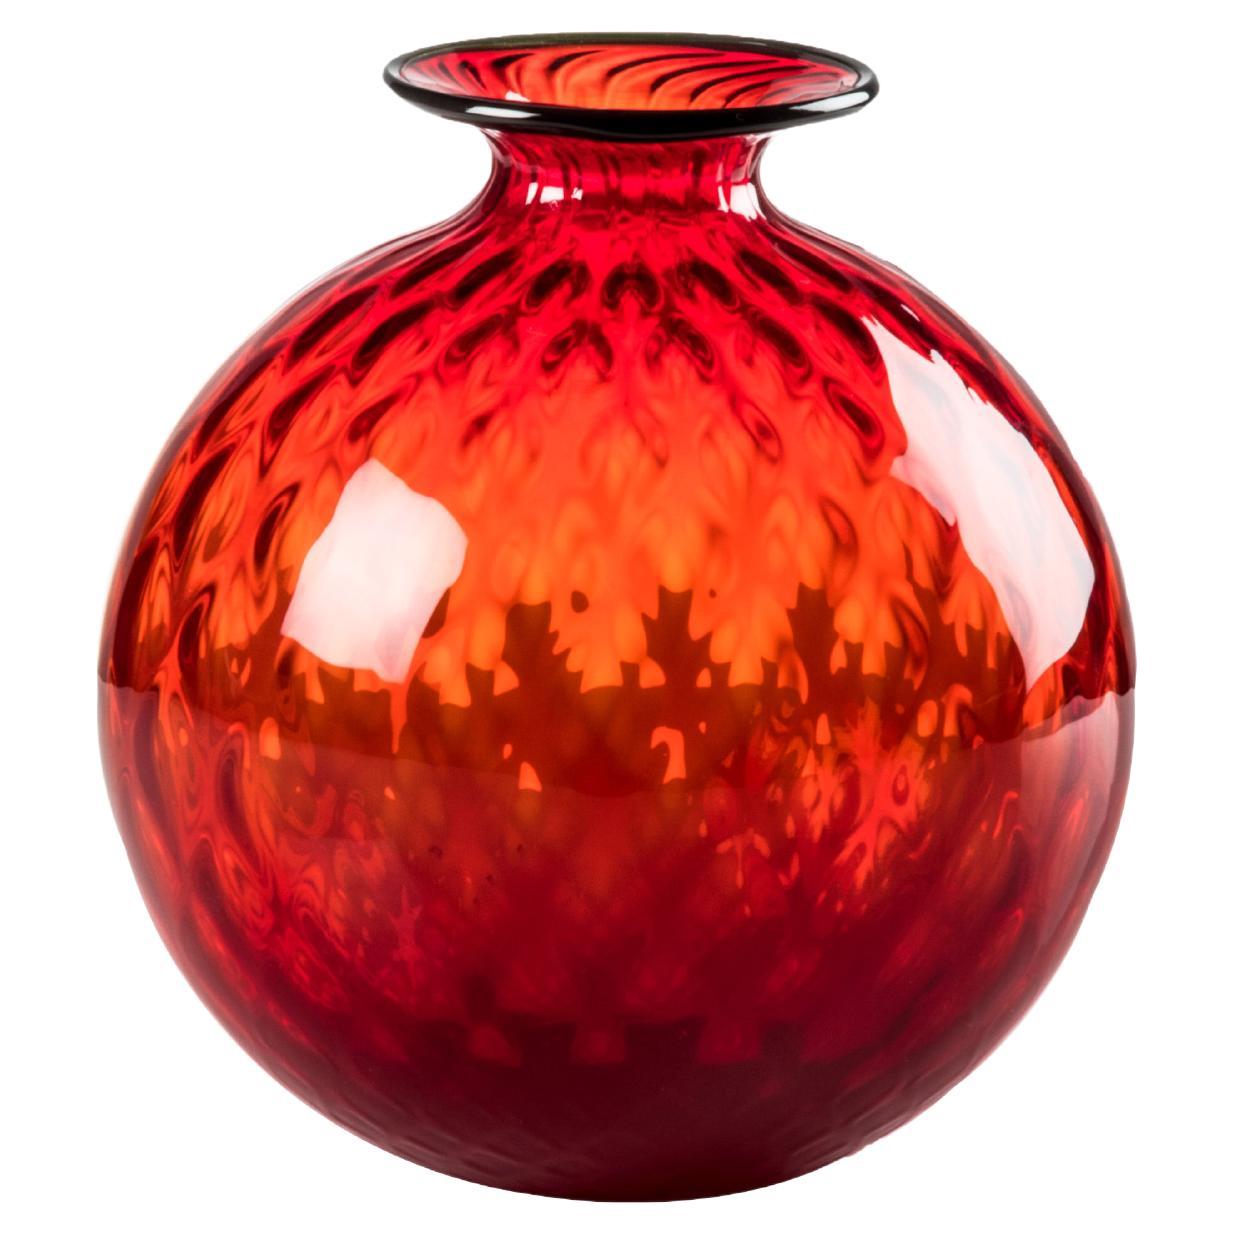 Venini Monofiore Balloton Large Vase in Red Apple-Green Thread Murano Glass For Sale